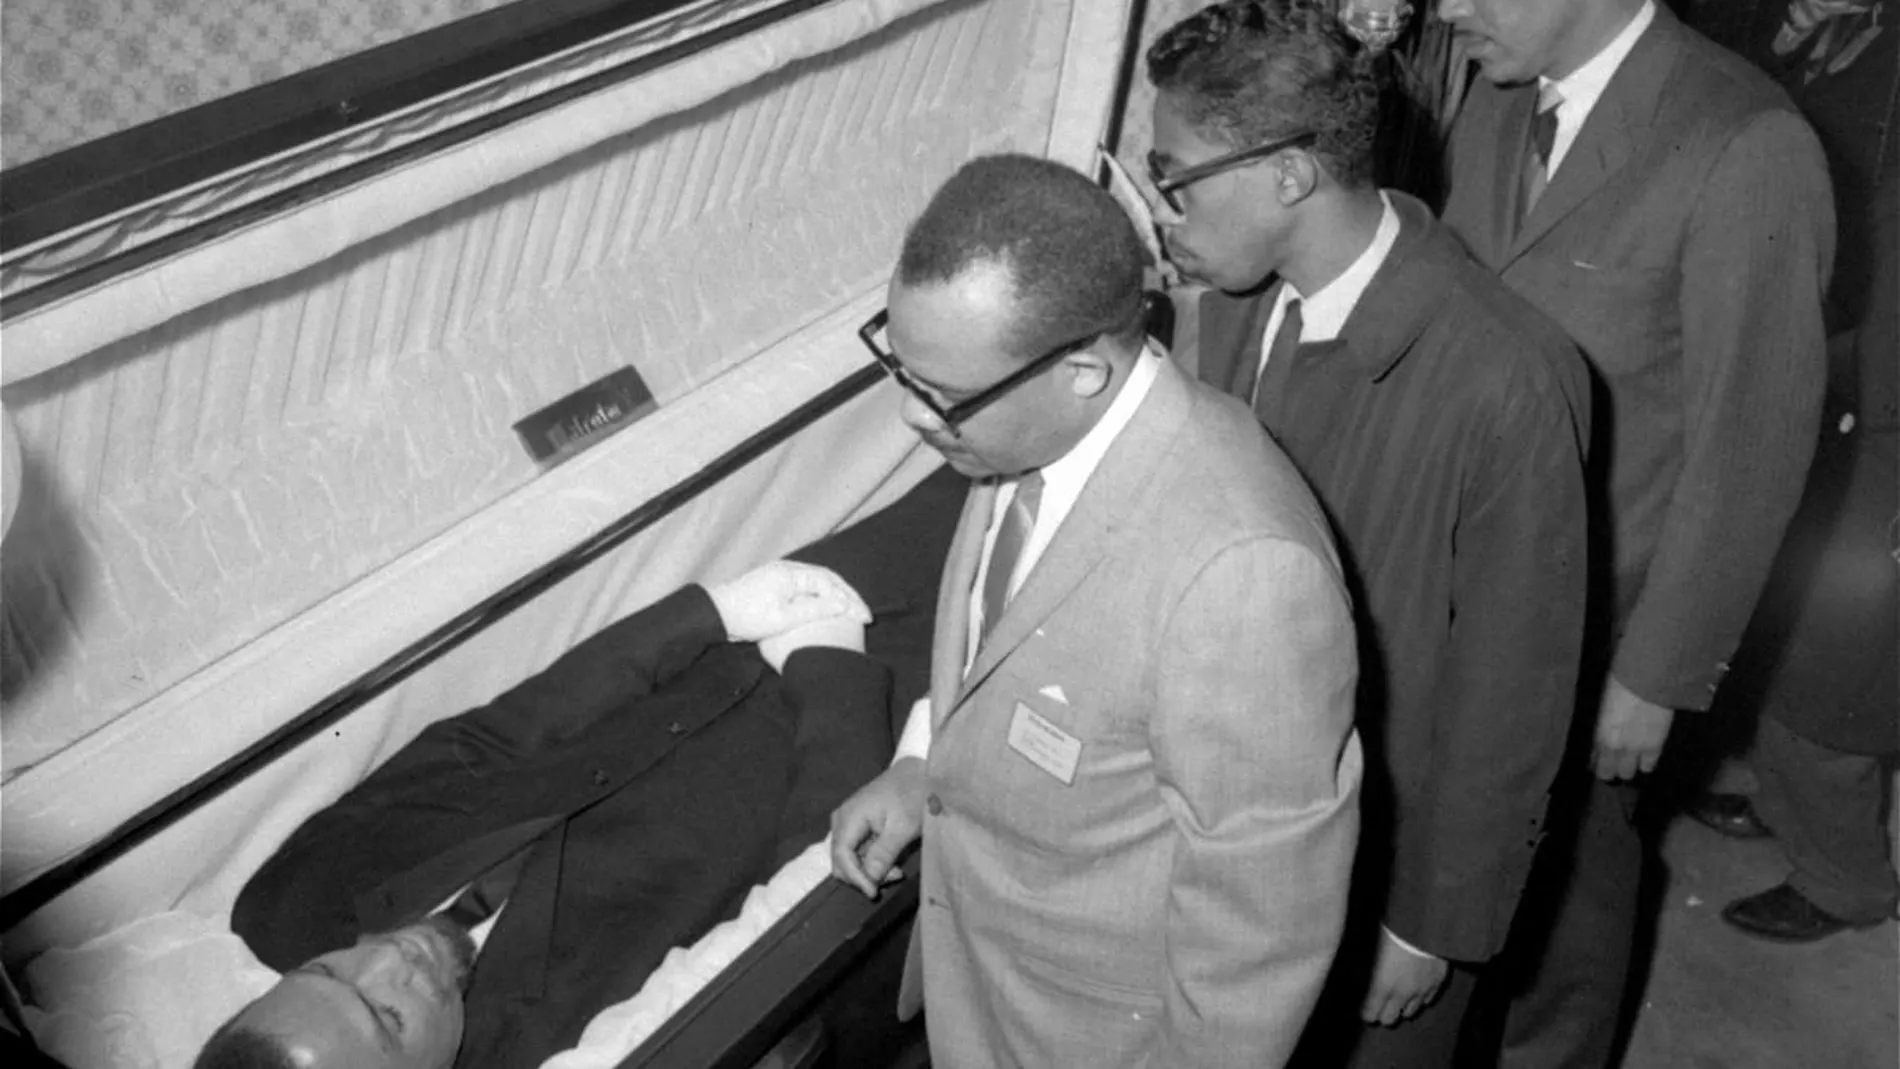 El cuerpo de Malcolm X, líder nacionalista negro que fue asesinado el 21 de febrero de 1965, en un mitin de su organización, es visto por los periodistas en la Unidad de Funeral Home, Eighth Avenue y 126th Street en la ciudad de Nueva York el 24 de febrero de 1965